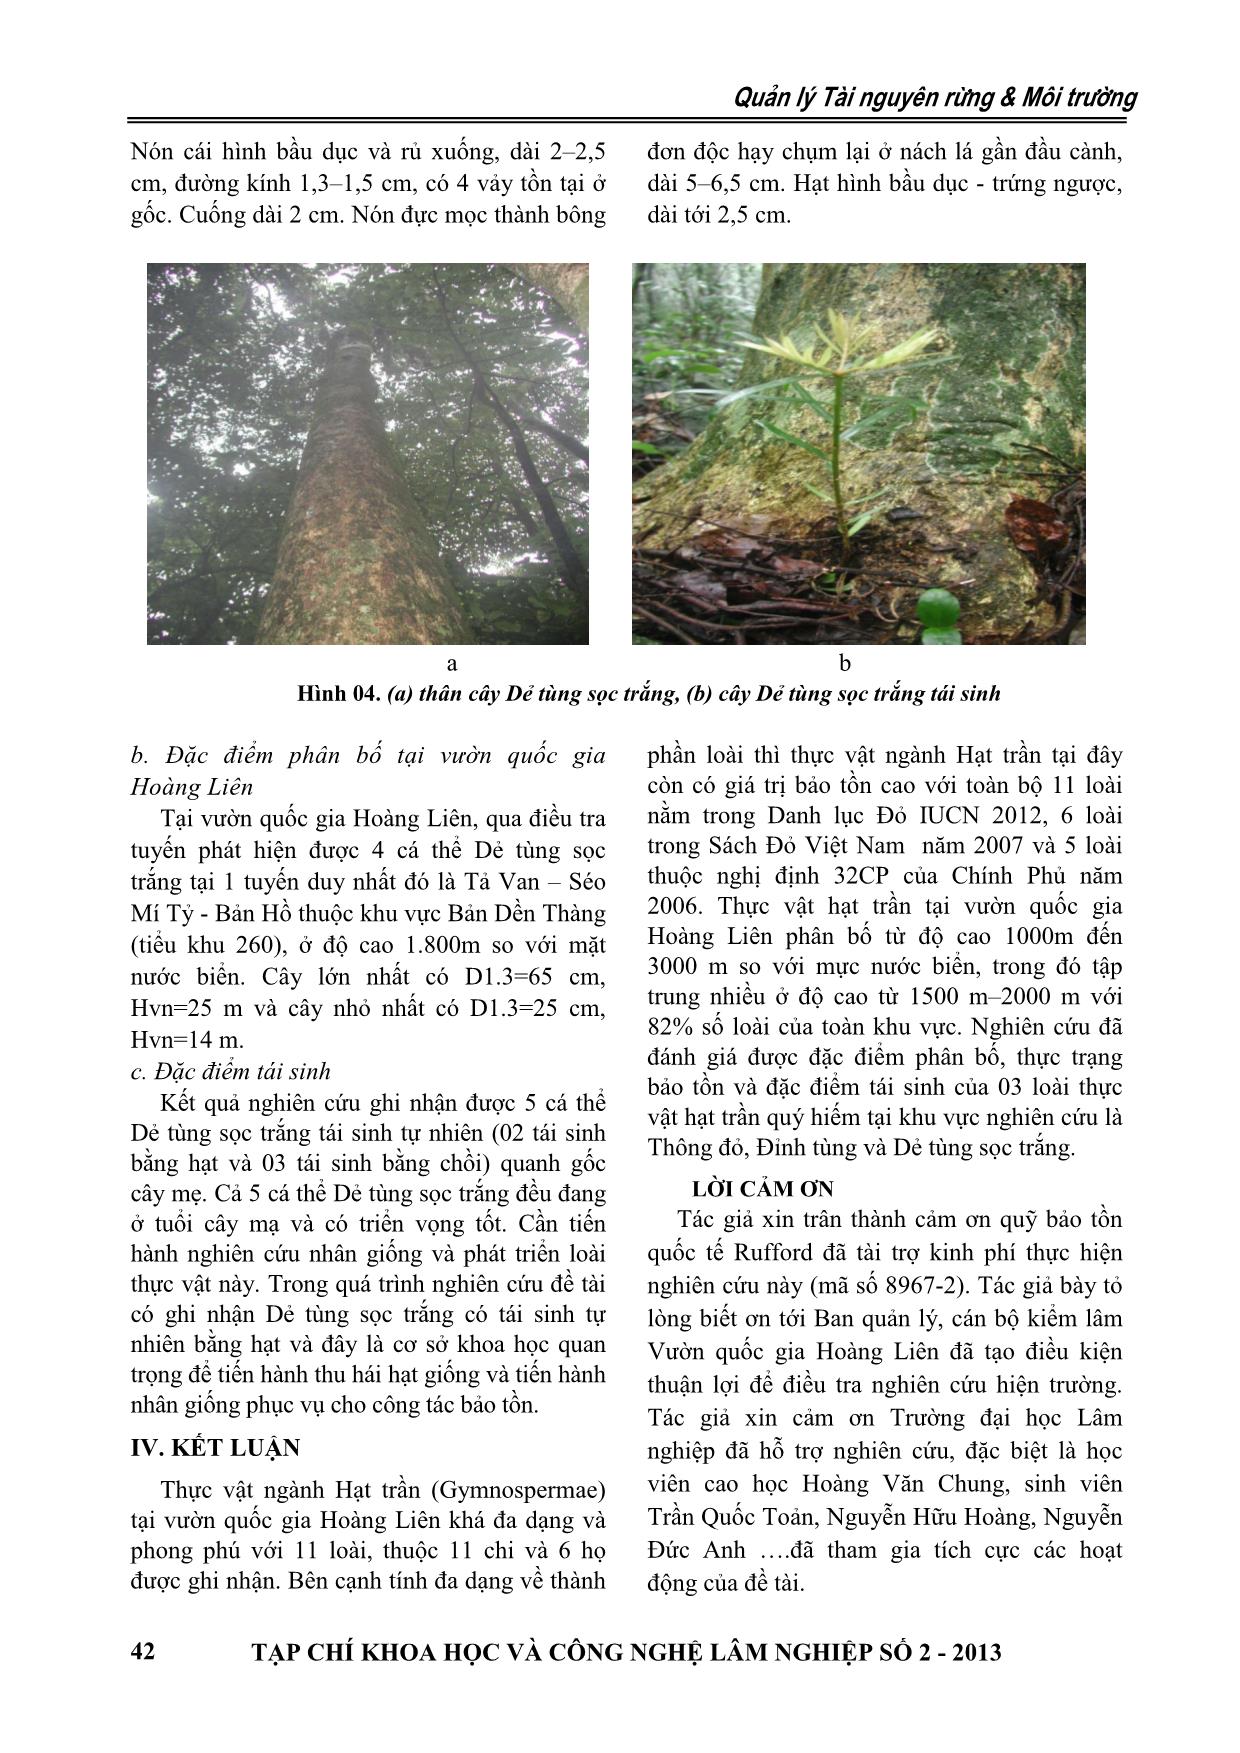 Thành phần loài và hiện trạng bảo tồn thực vật ngành hạt trần (Gymnosperm) tại Vườn quốc gia Hoàng Liên trang 7